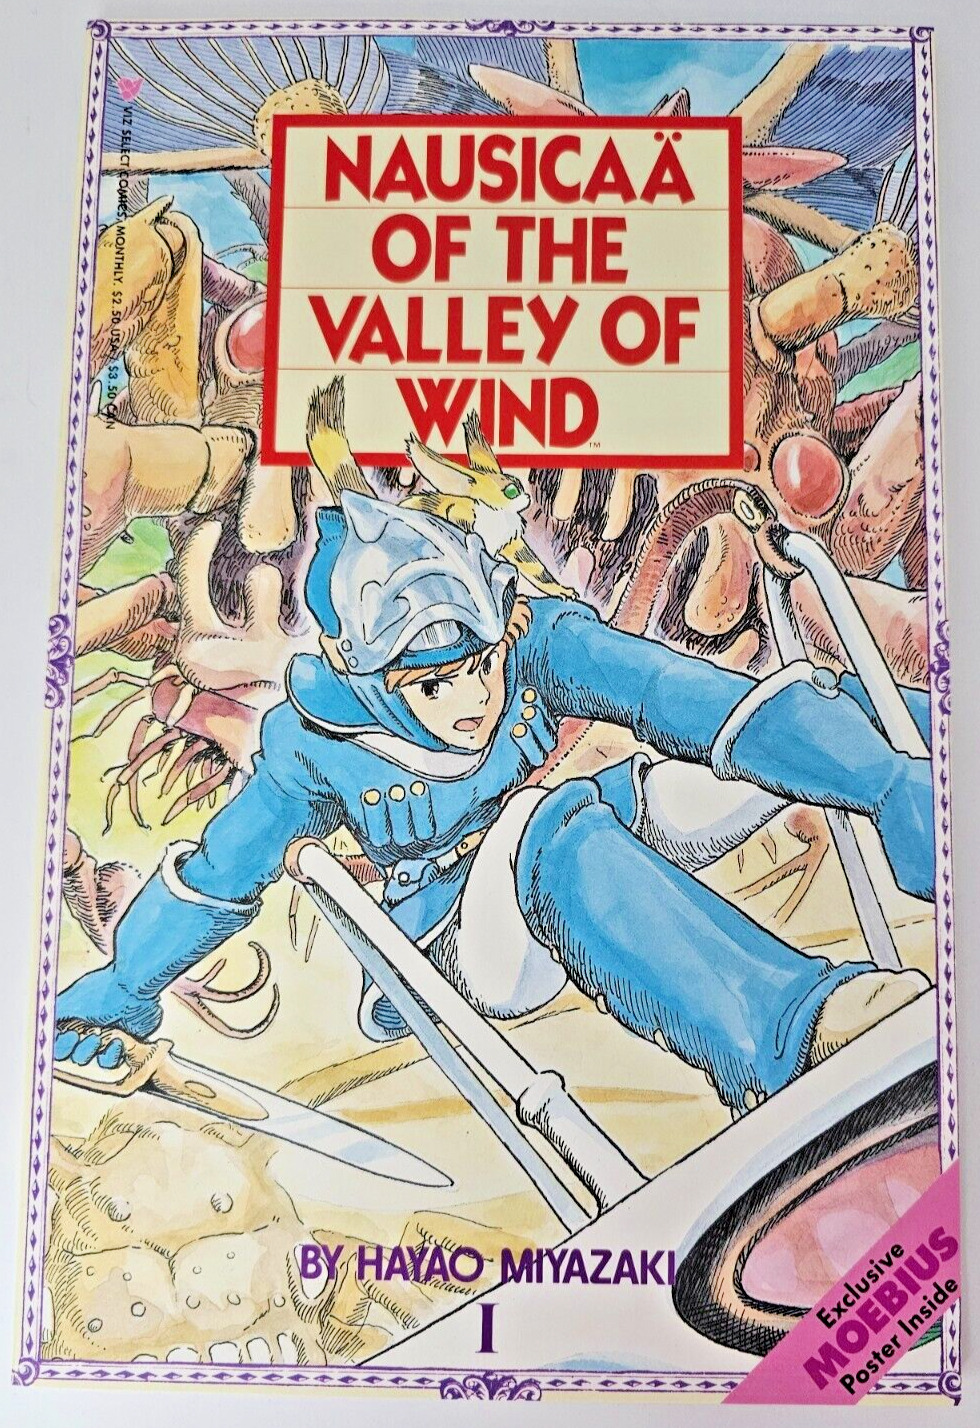 Nausicaa of the Valley of Wind Part 1 #1 '88 Studio Ghibli Hayao Miyazaki NM RAW